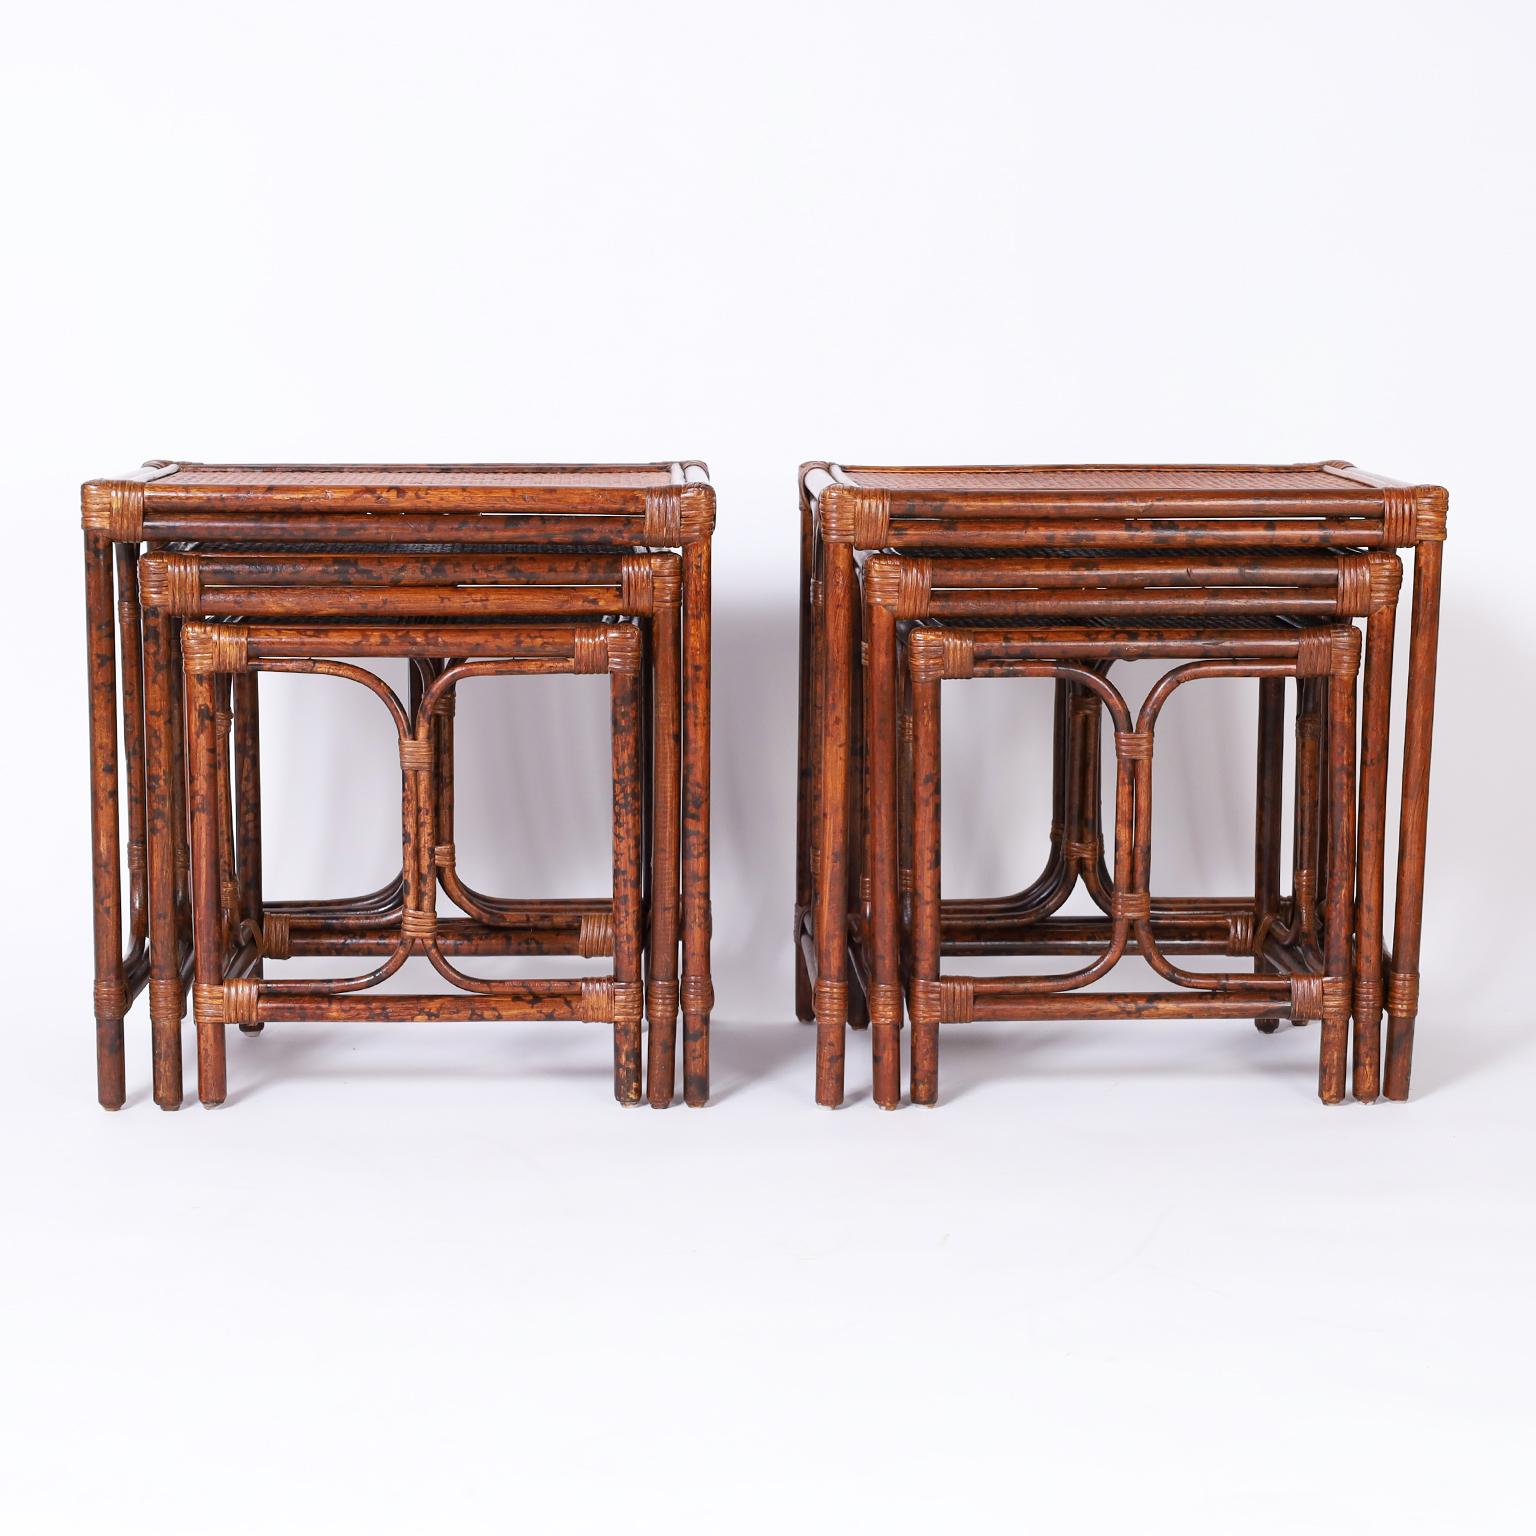 Rare paire de nids de tables ou de stands de style colonial britannique, chacun avec des cadres en faux bambou enveloppés de panneaux en roseau et en tissu d'herbe sur les dessus de table.


